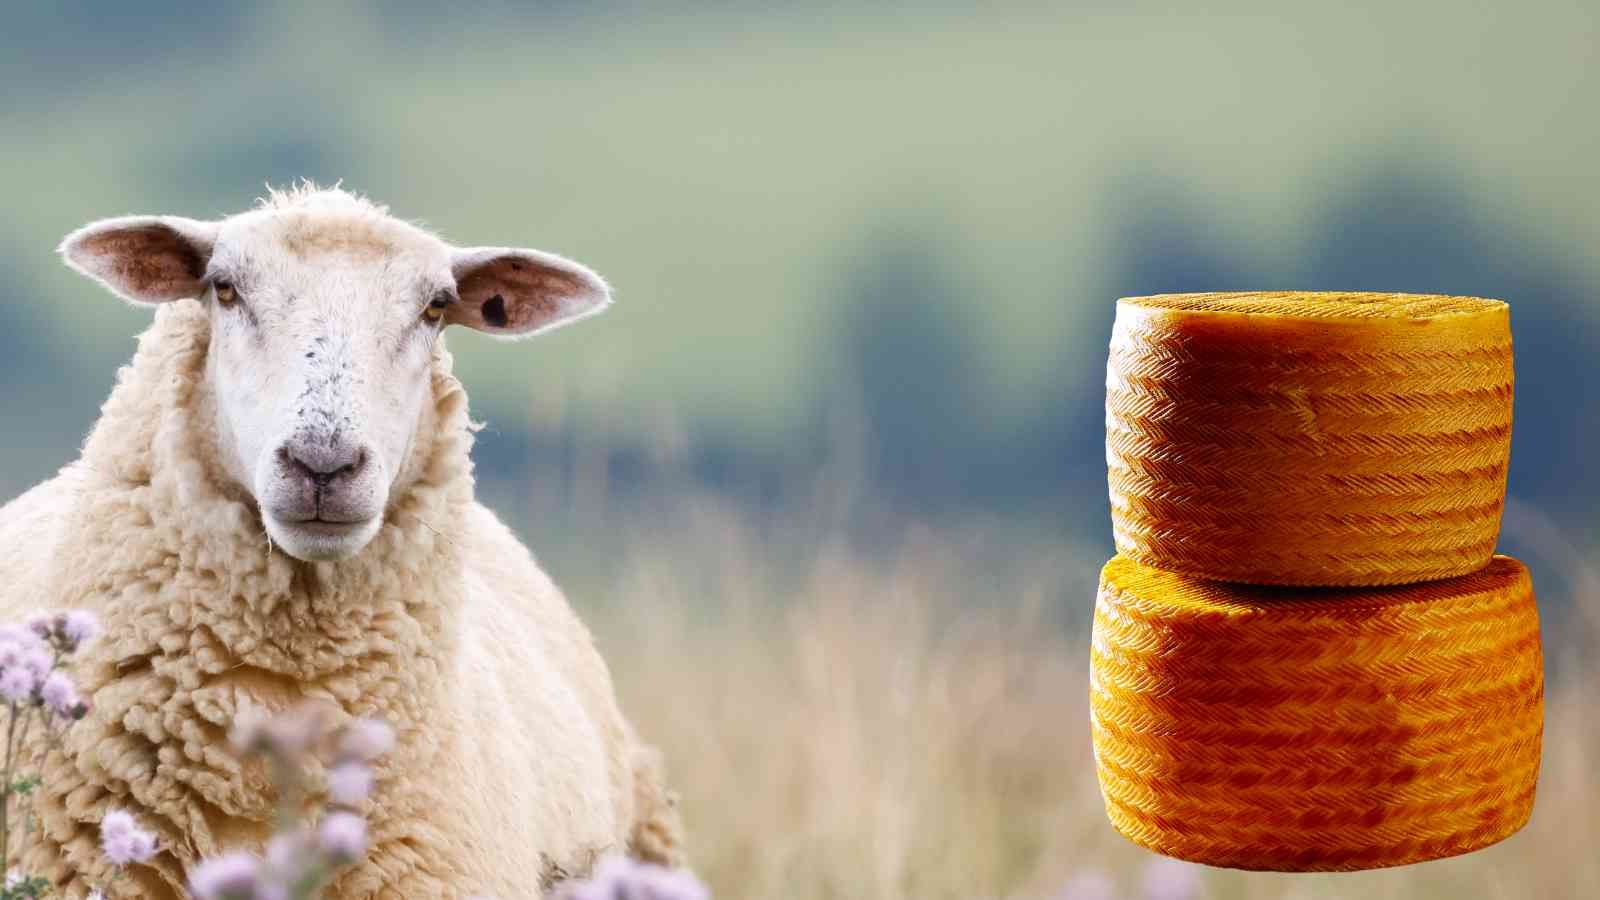 Ein Schaf in einer blühenden Wiese neben zwei gestapelten Laiben Schafsmilchkäse Manchego repräsentiert die Schafskäseauswahl von miori in Saarbrücken